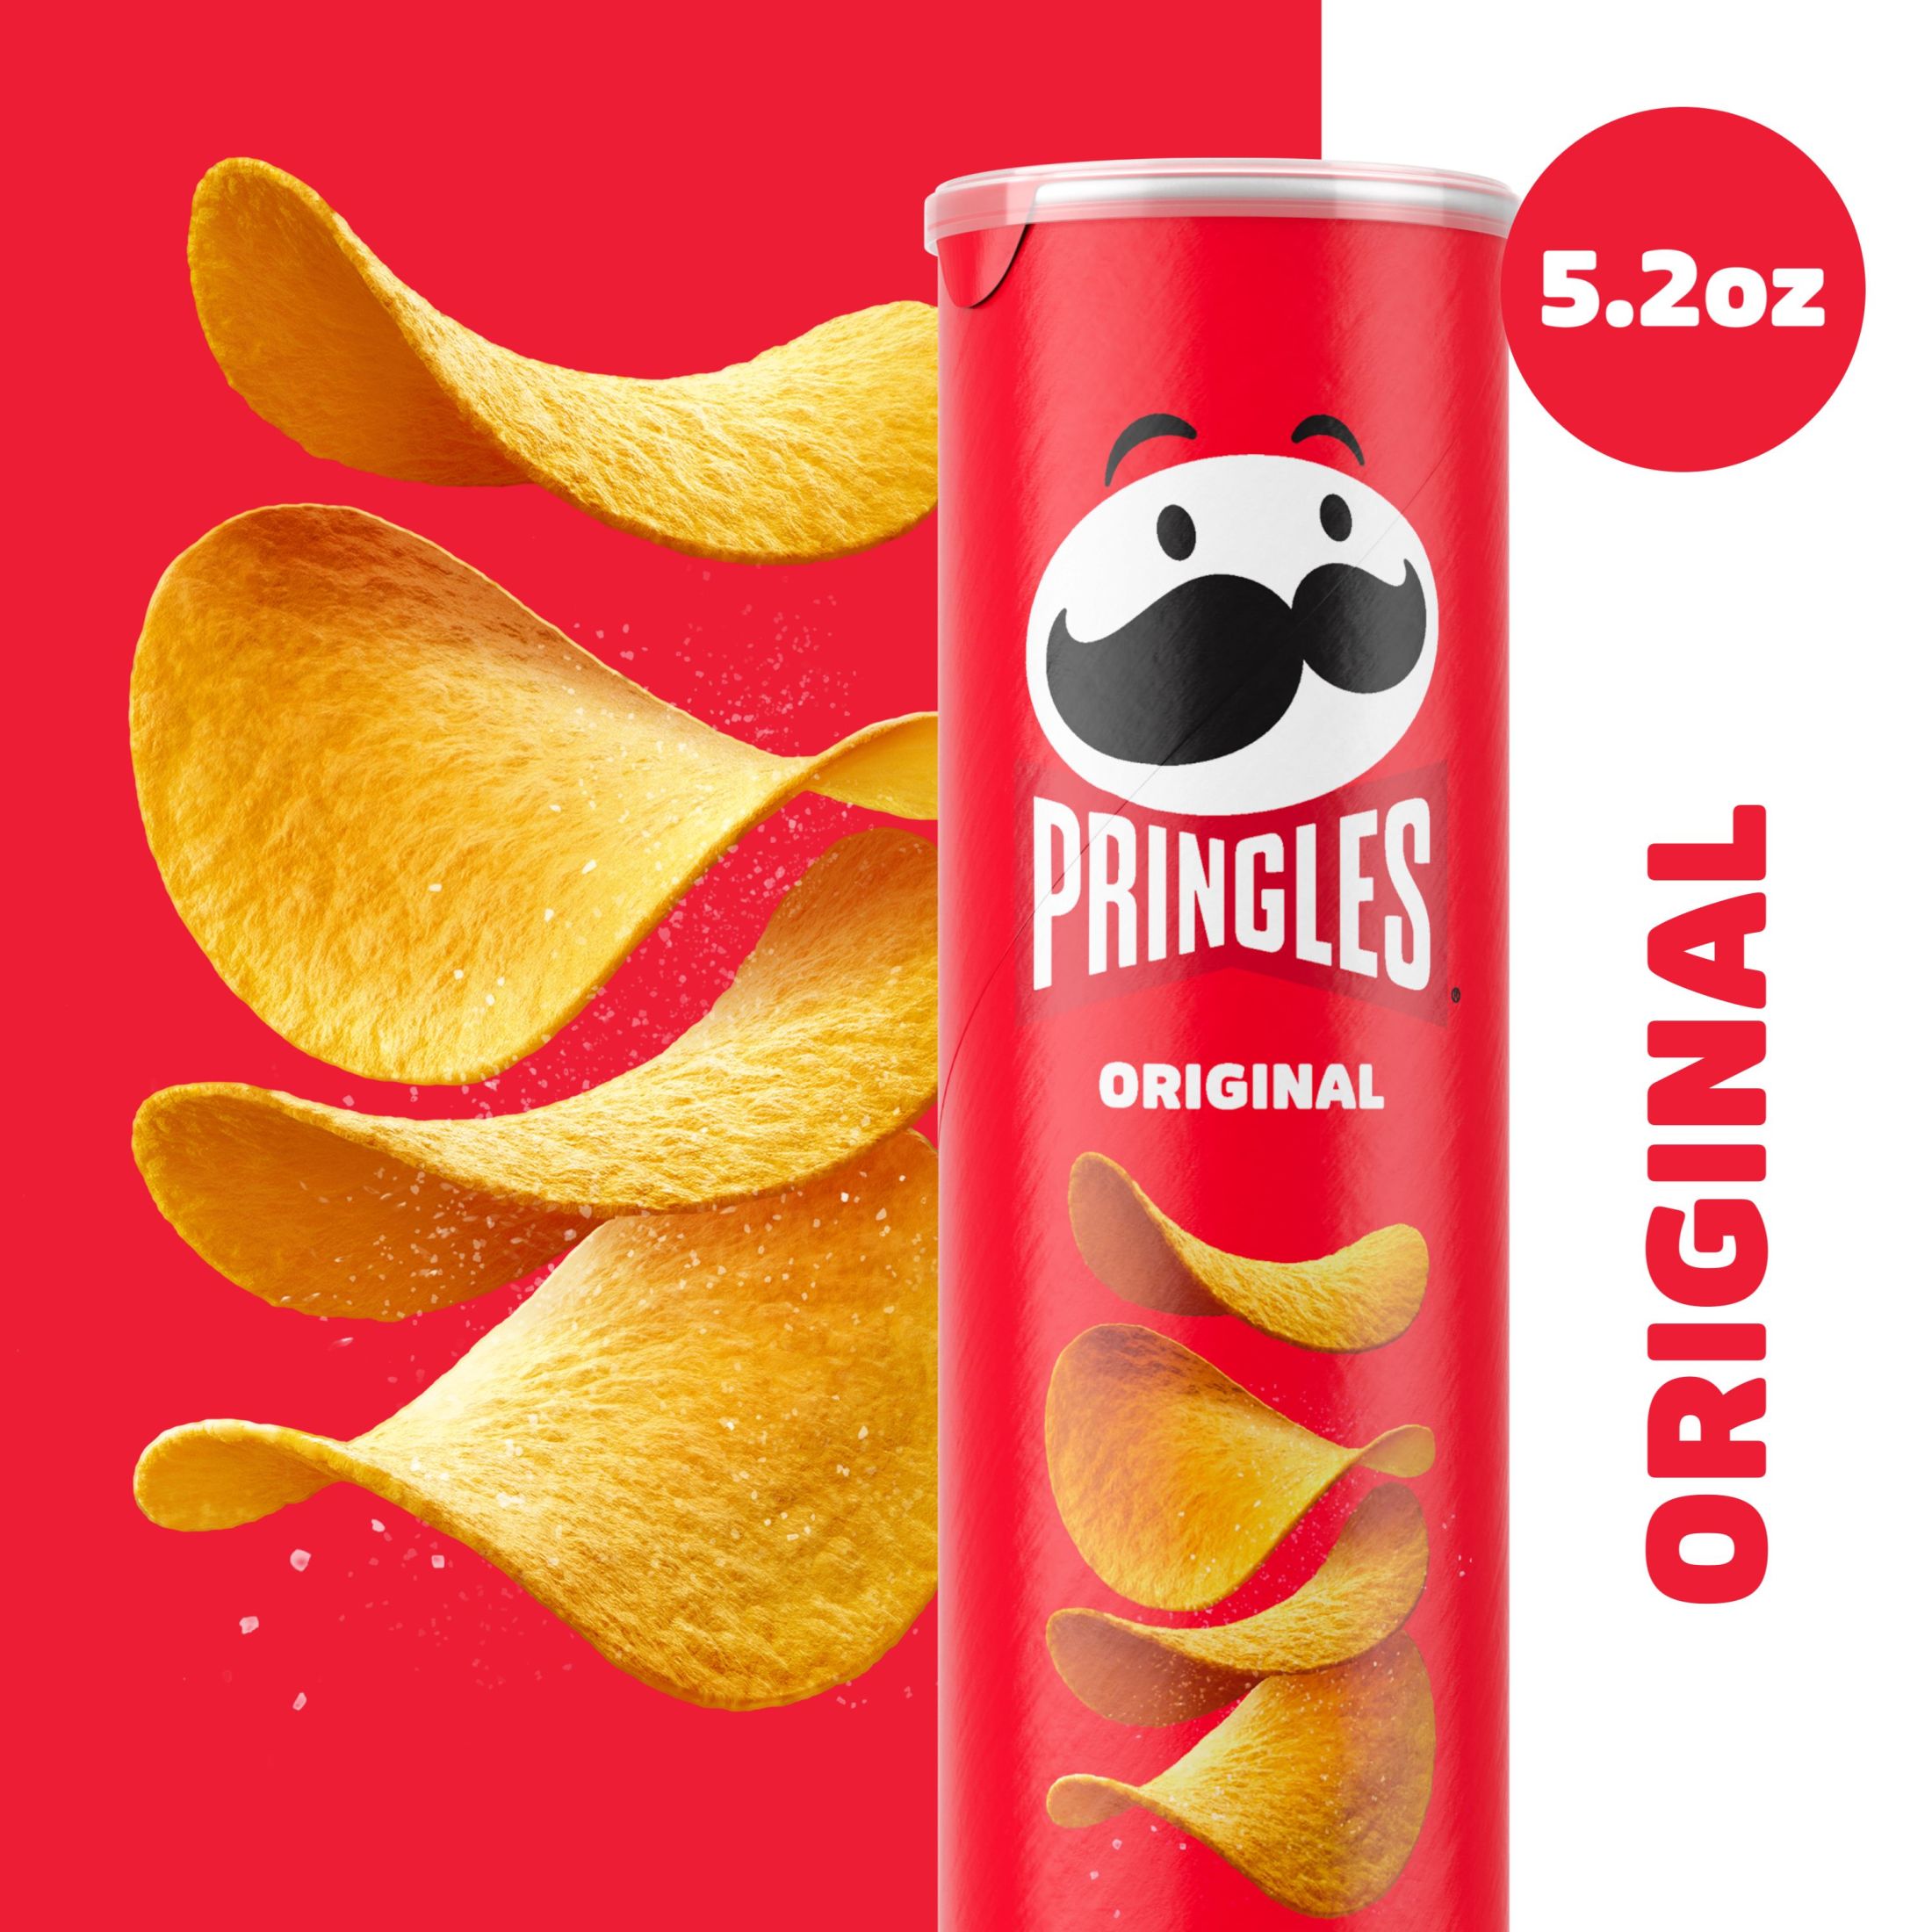 Pringles Original Potato Crisps Chips, Lunch Snacks, 5.2  oz - image 4 of 14